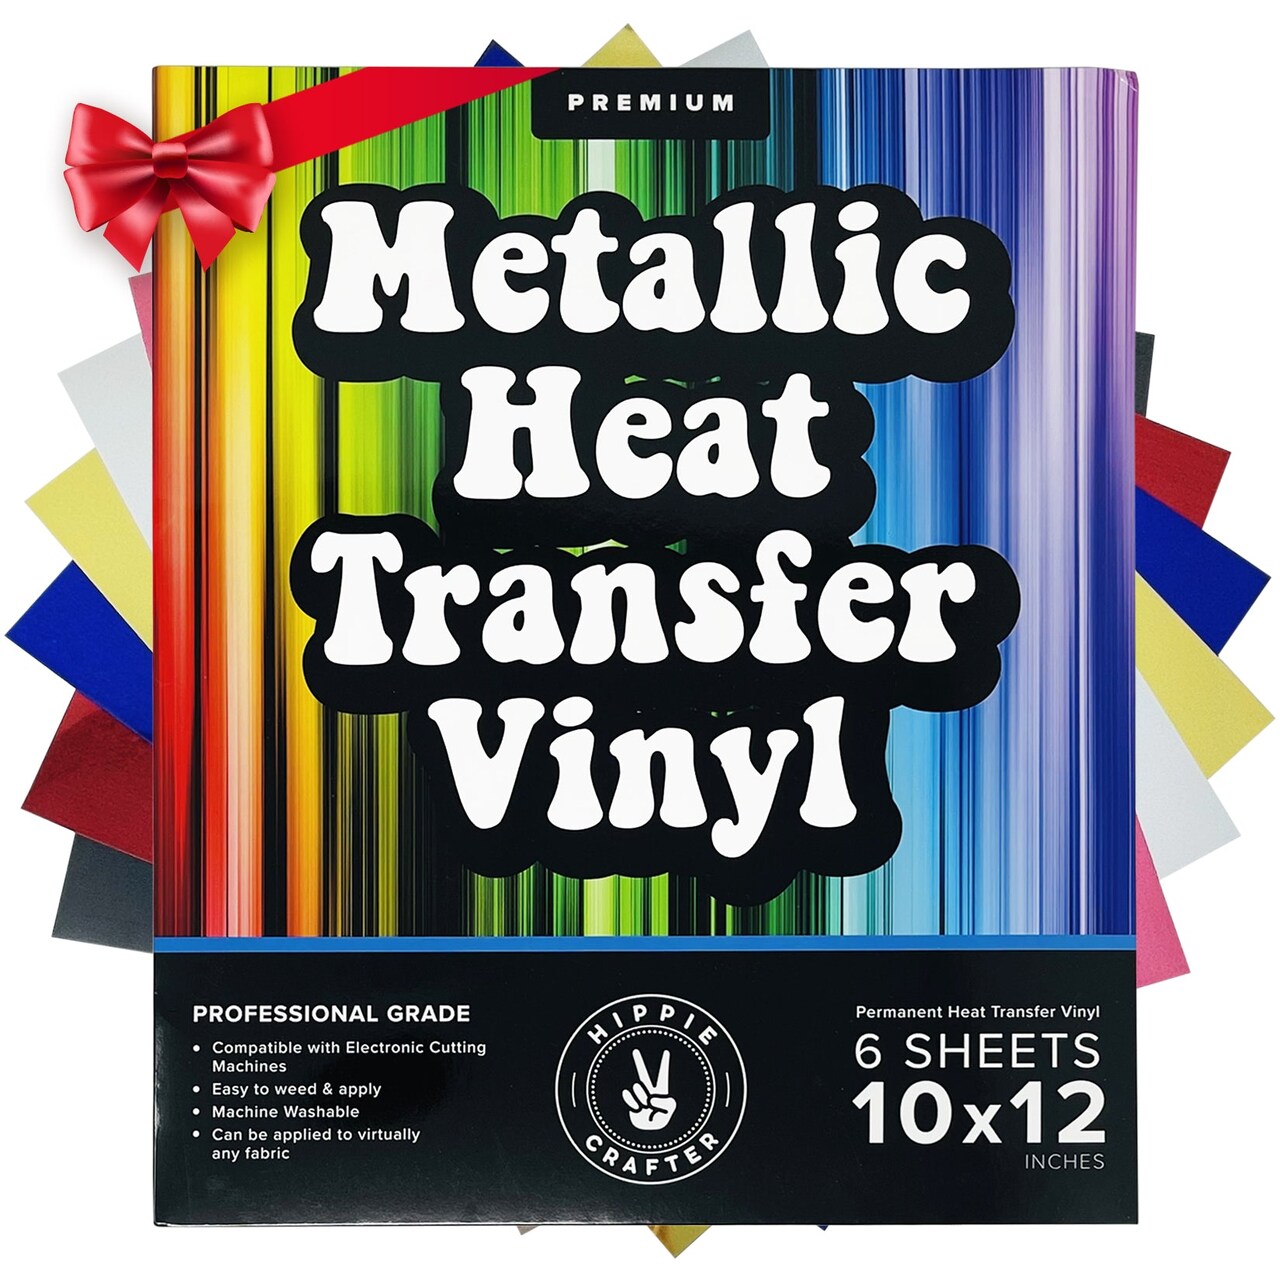 Metallic Vinyl Heat Transfer Vinyl Gold Vinyl Sheets Pink Chrome Silver  Metalic Permanent Metallic Vinyl Foil Adhesive Vinyl Metallic HTV Pack Foil Vinyl  Iron On Vinyl